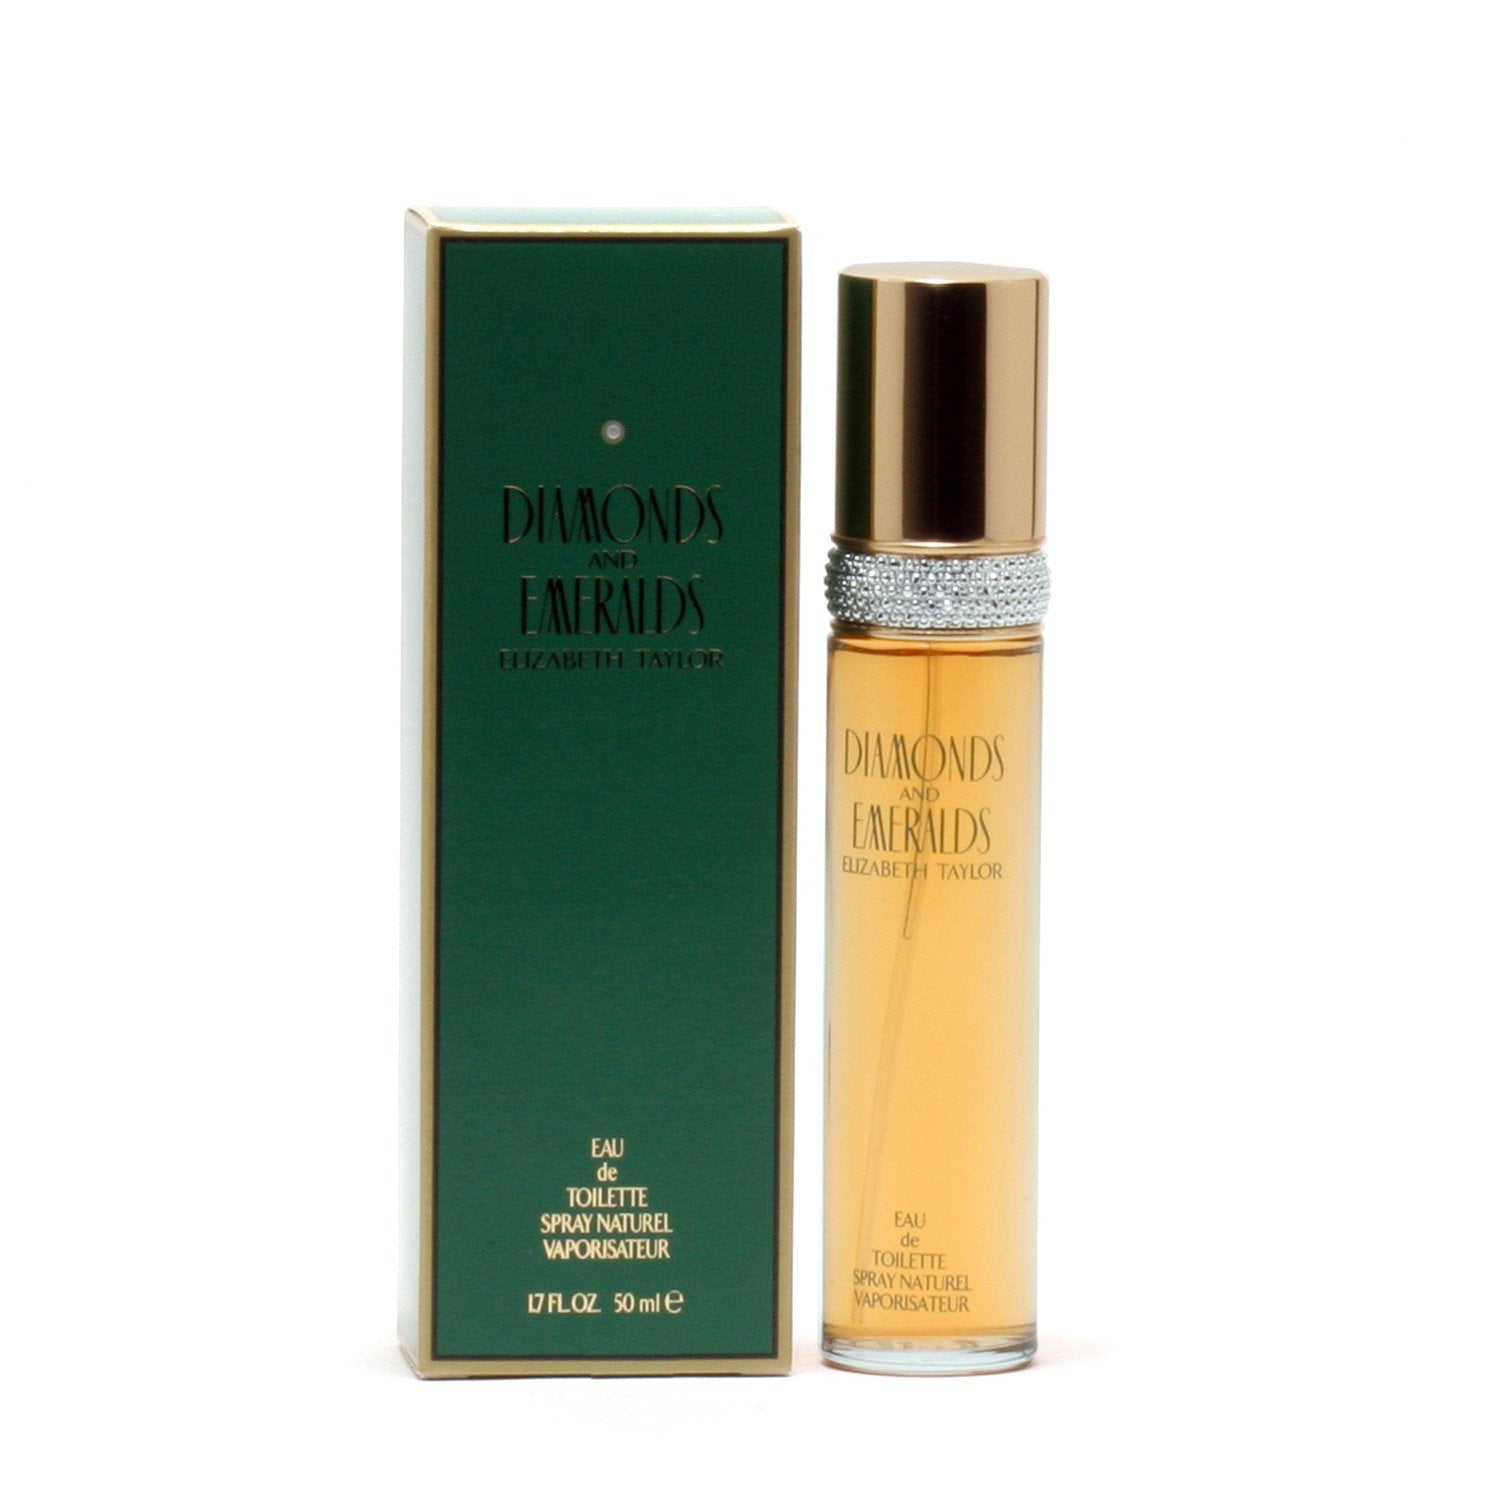 Perfume - DIAMONDS & EMERALDS FOR WOMEN BY ELIZABETH TAYLOR - EAU DE TOILETTE SPRAY